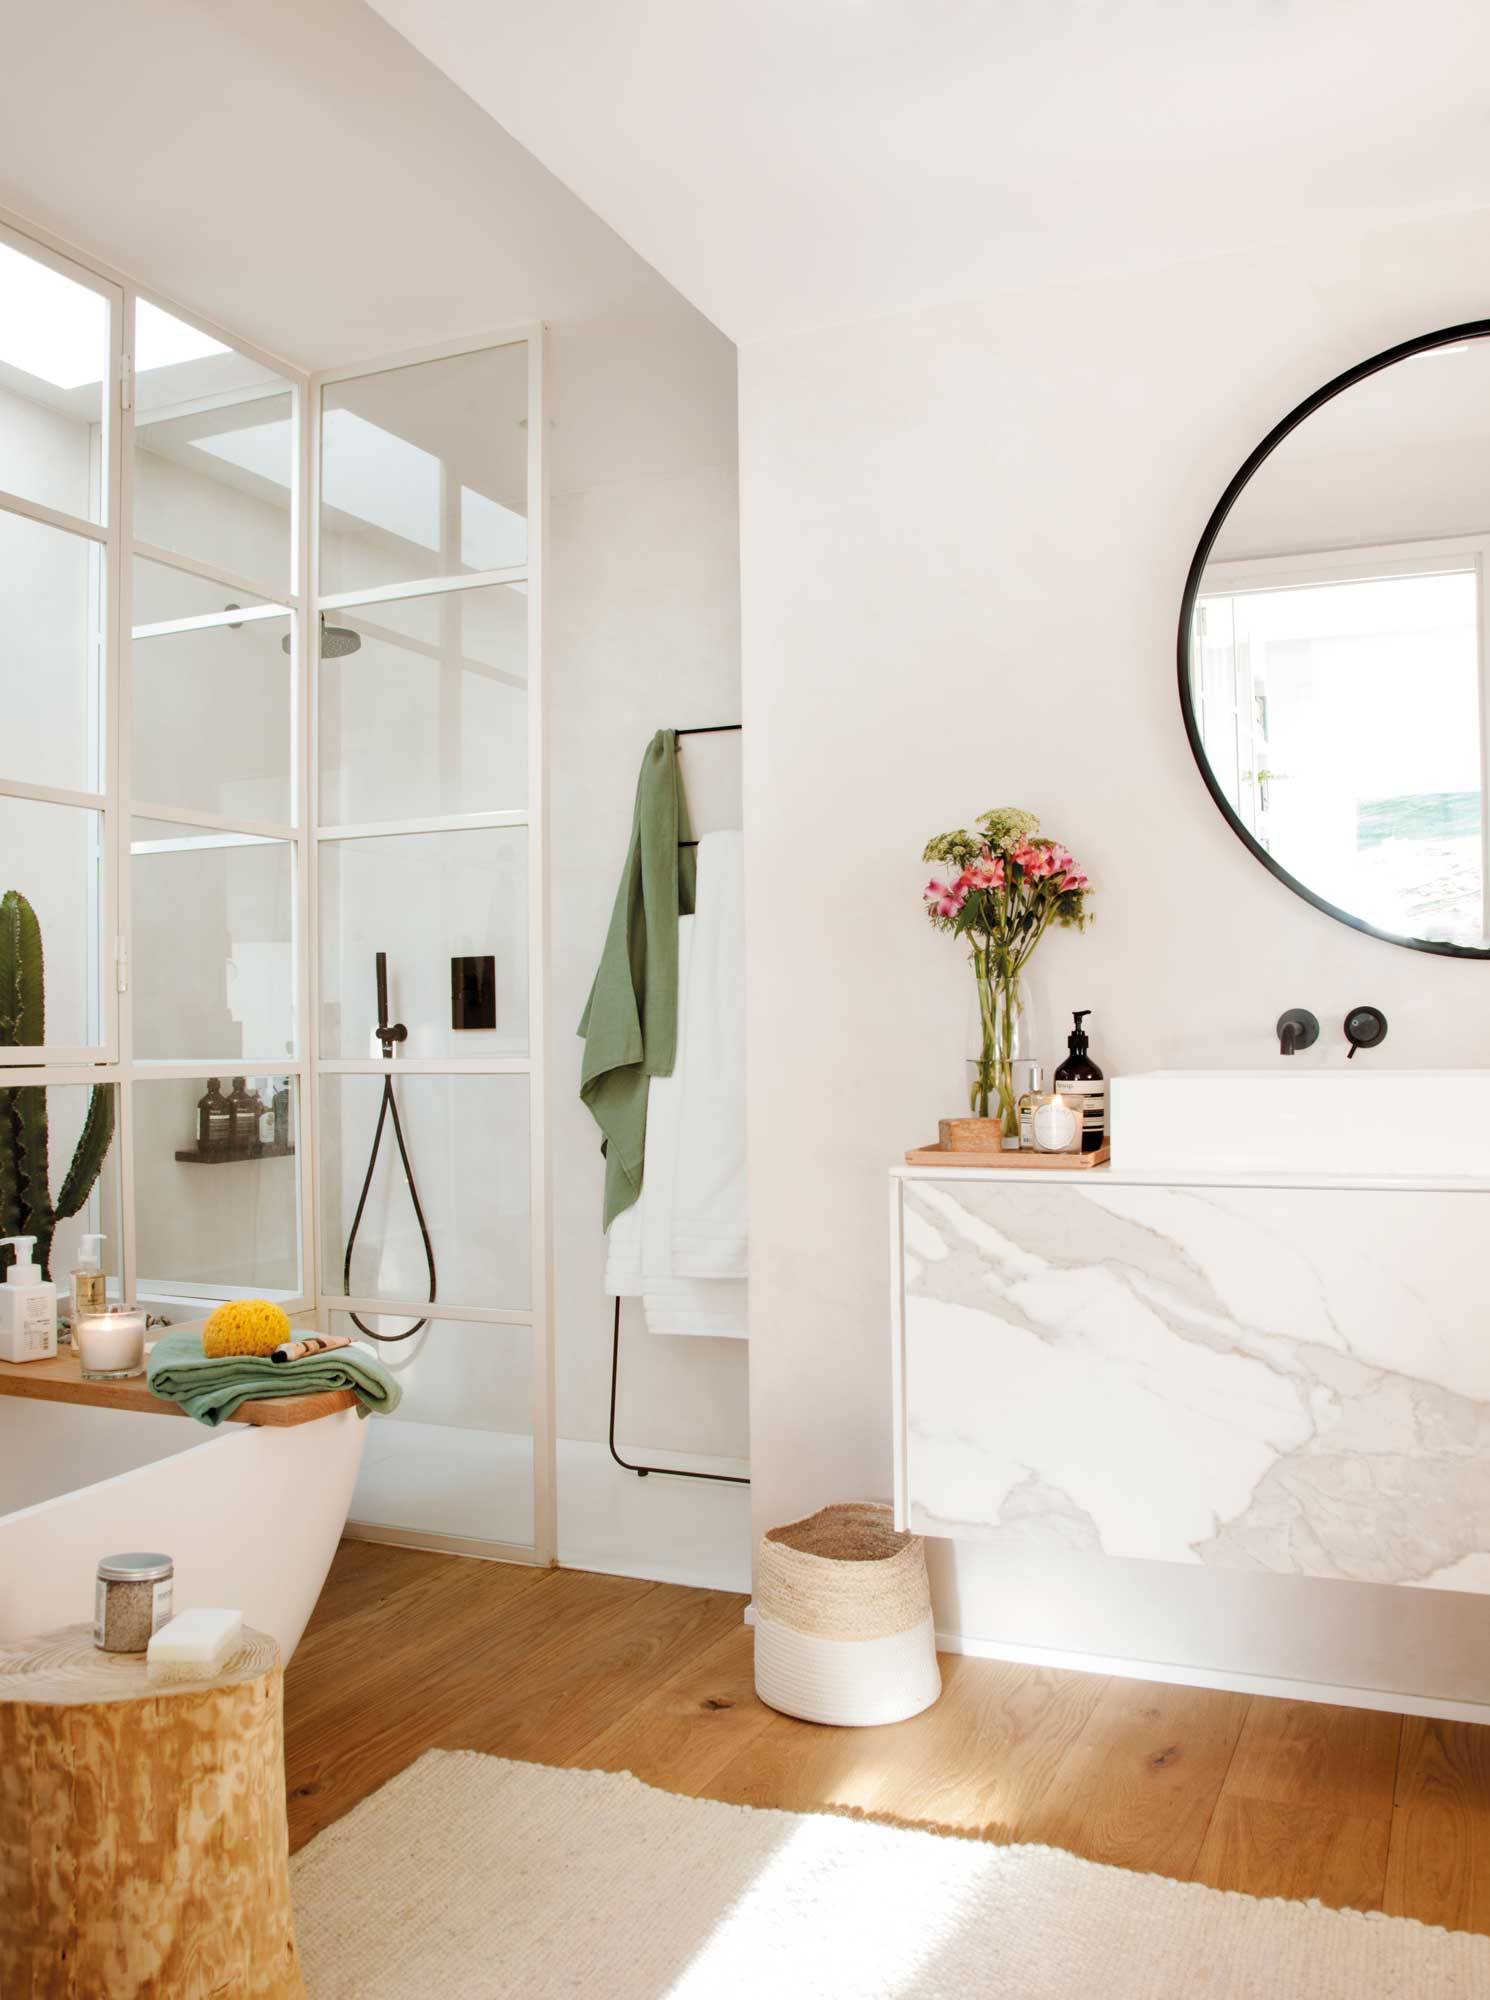 Baño moderno con ducha y bañera decorado en blanco, con el mueble bajo lavabo con el frente de mármol